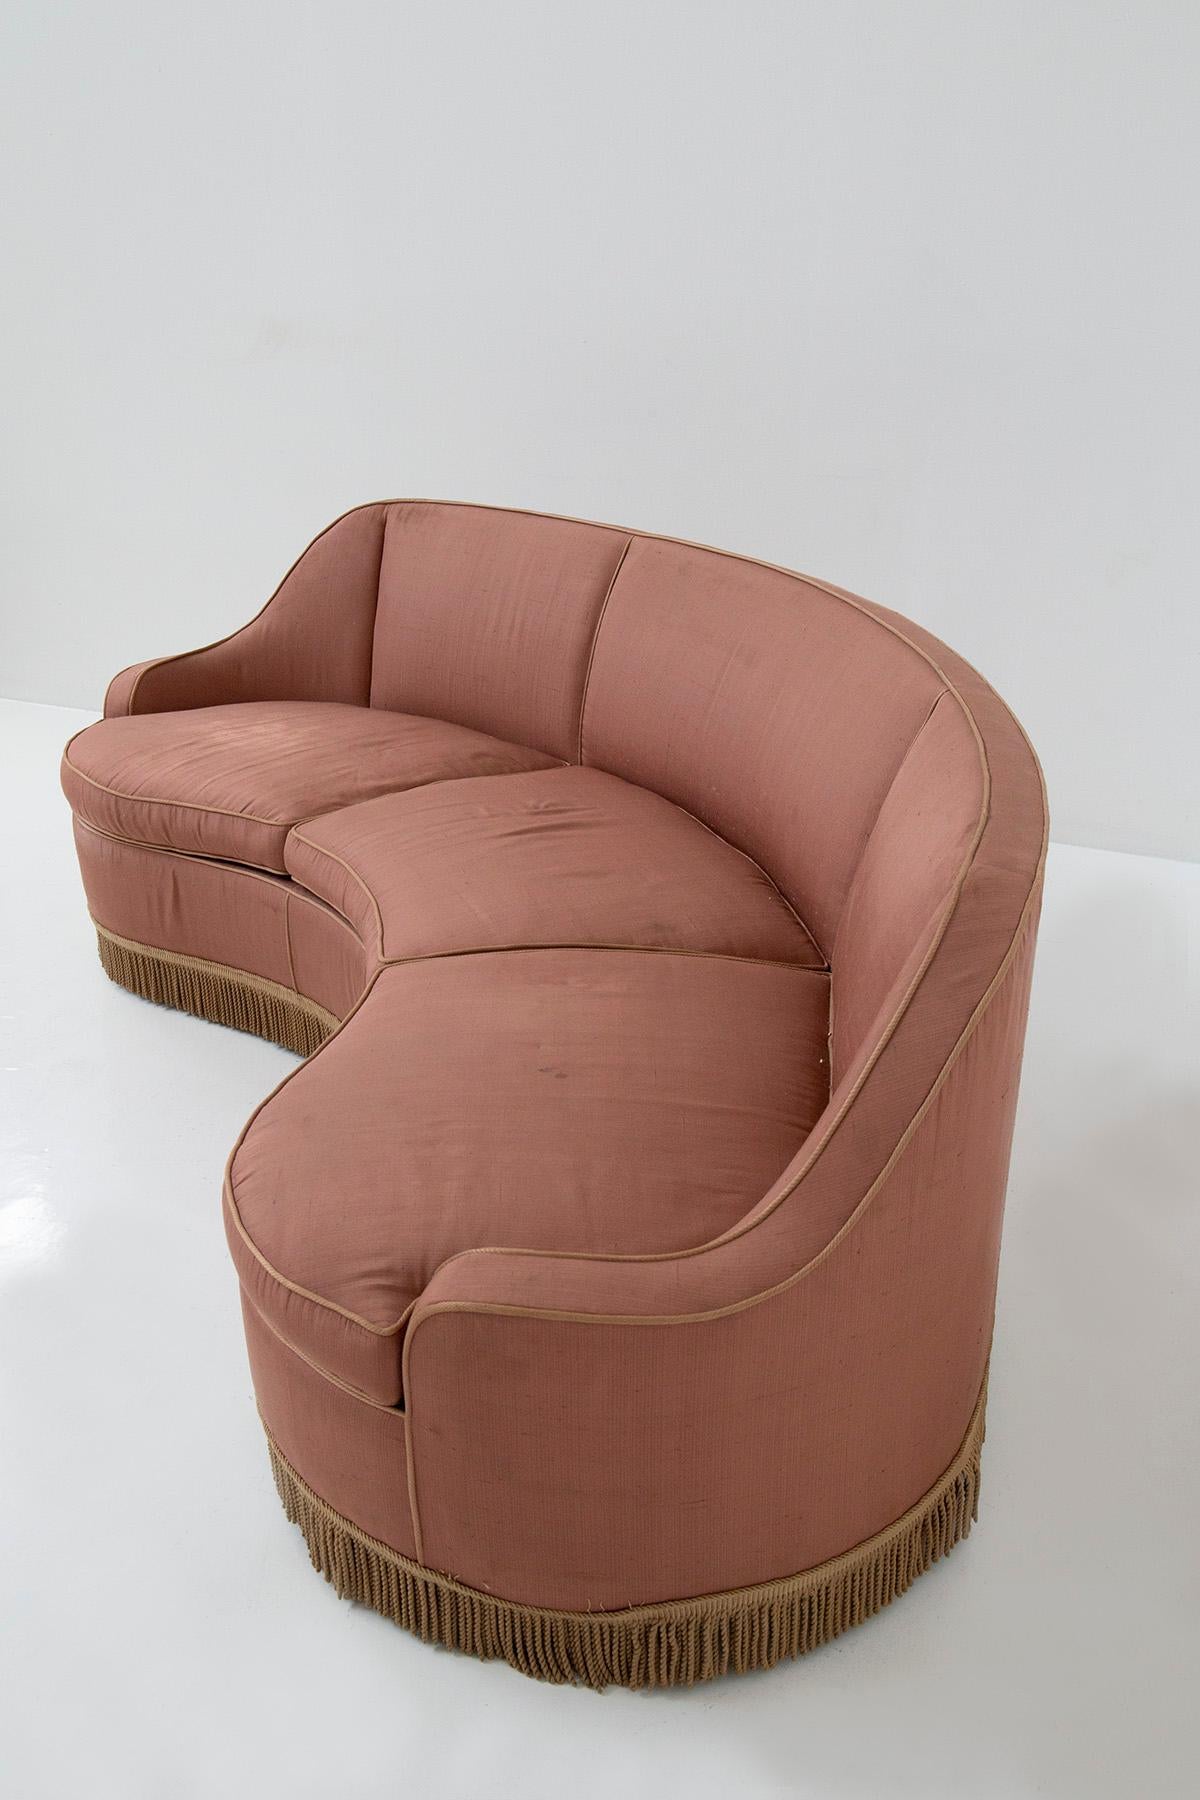 Italian three-seater sofa in pink fabric attributed to Gio Ponti 2